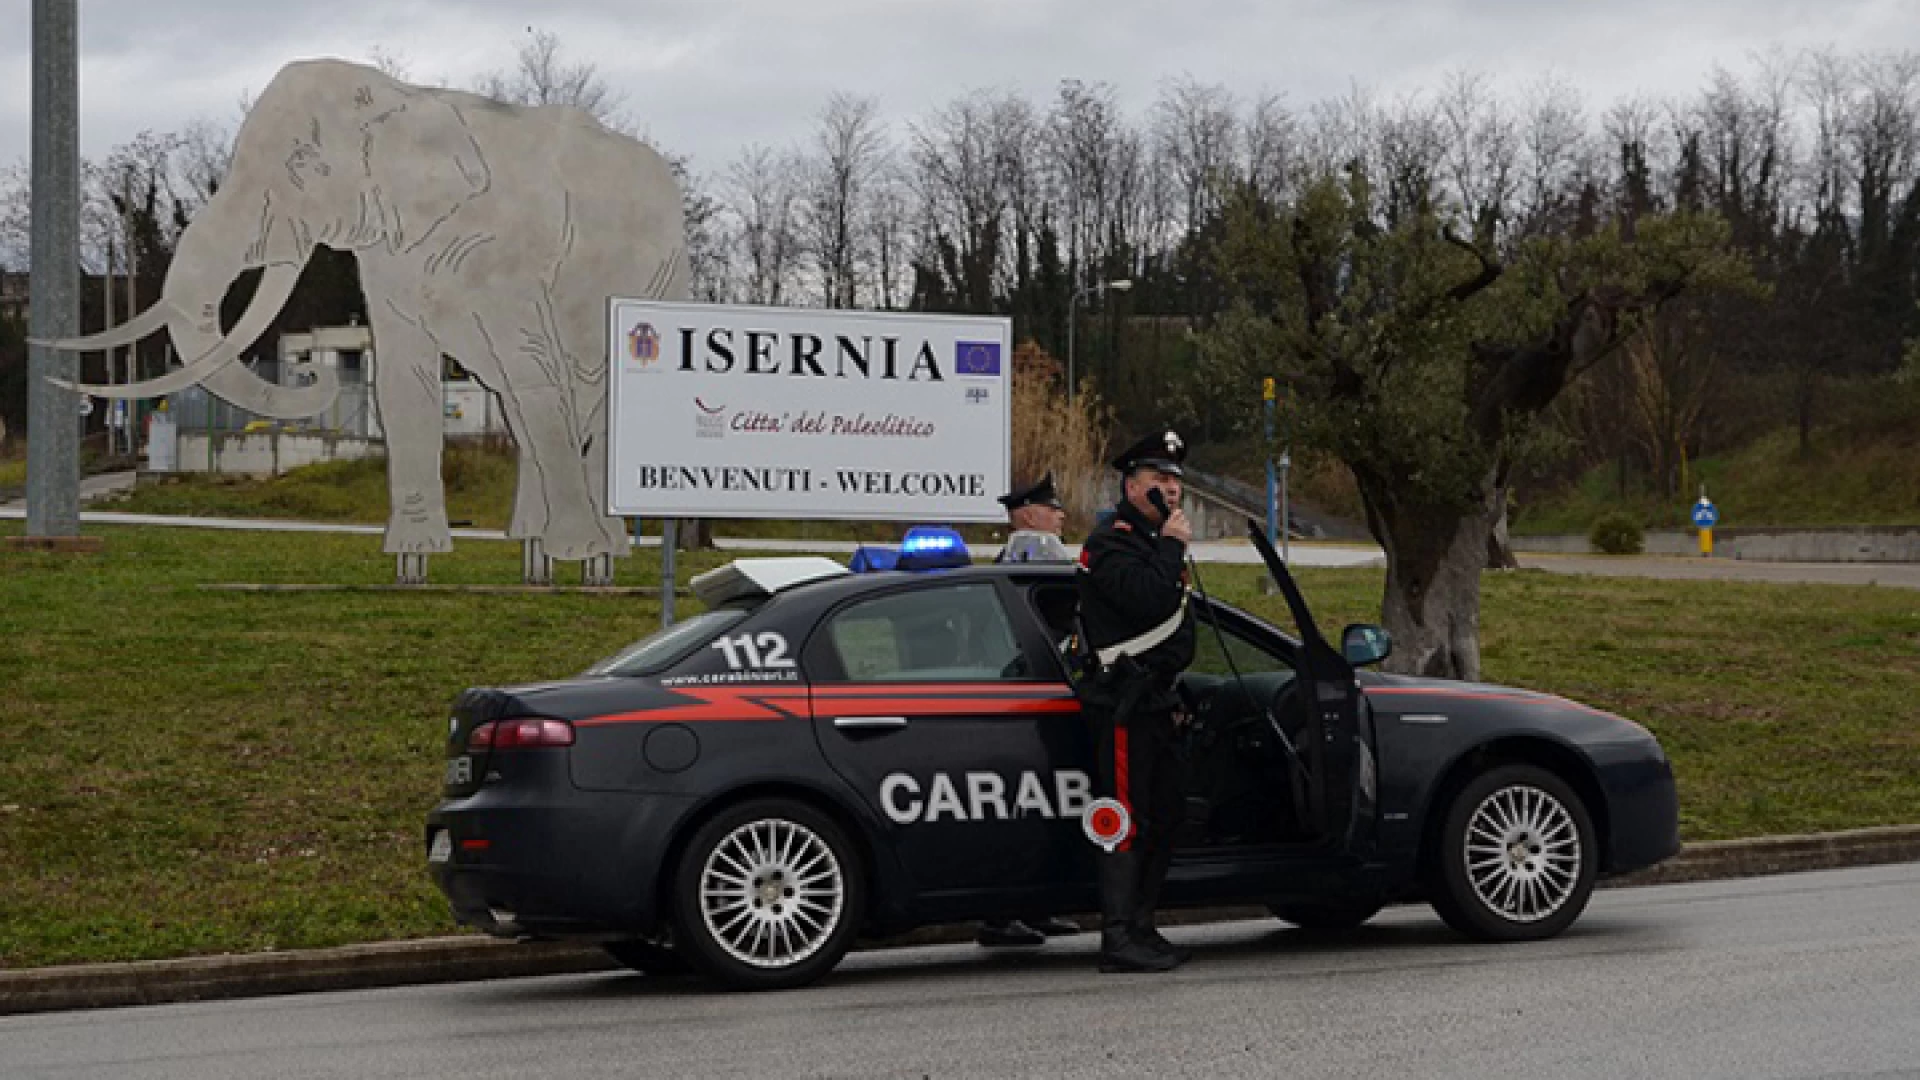 Isernia: Obiettivo “Sicurezza”, raffiche di controlli, denunce e sequestri  da parte dei Carabinieri.  A Filignano una 40enne staniera denunciata per ricettazione